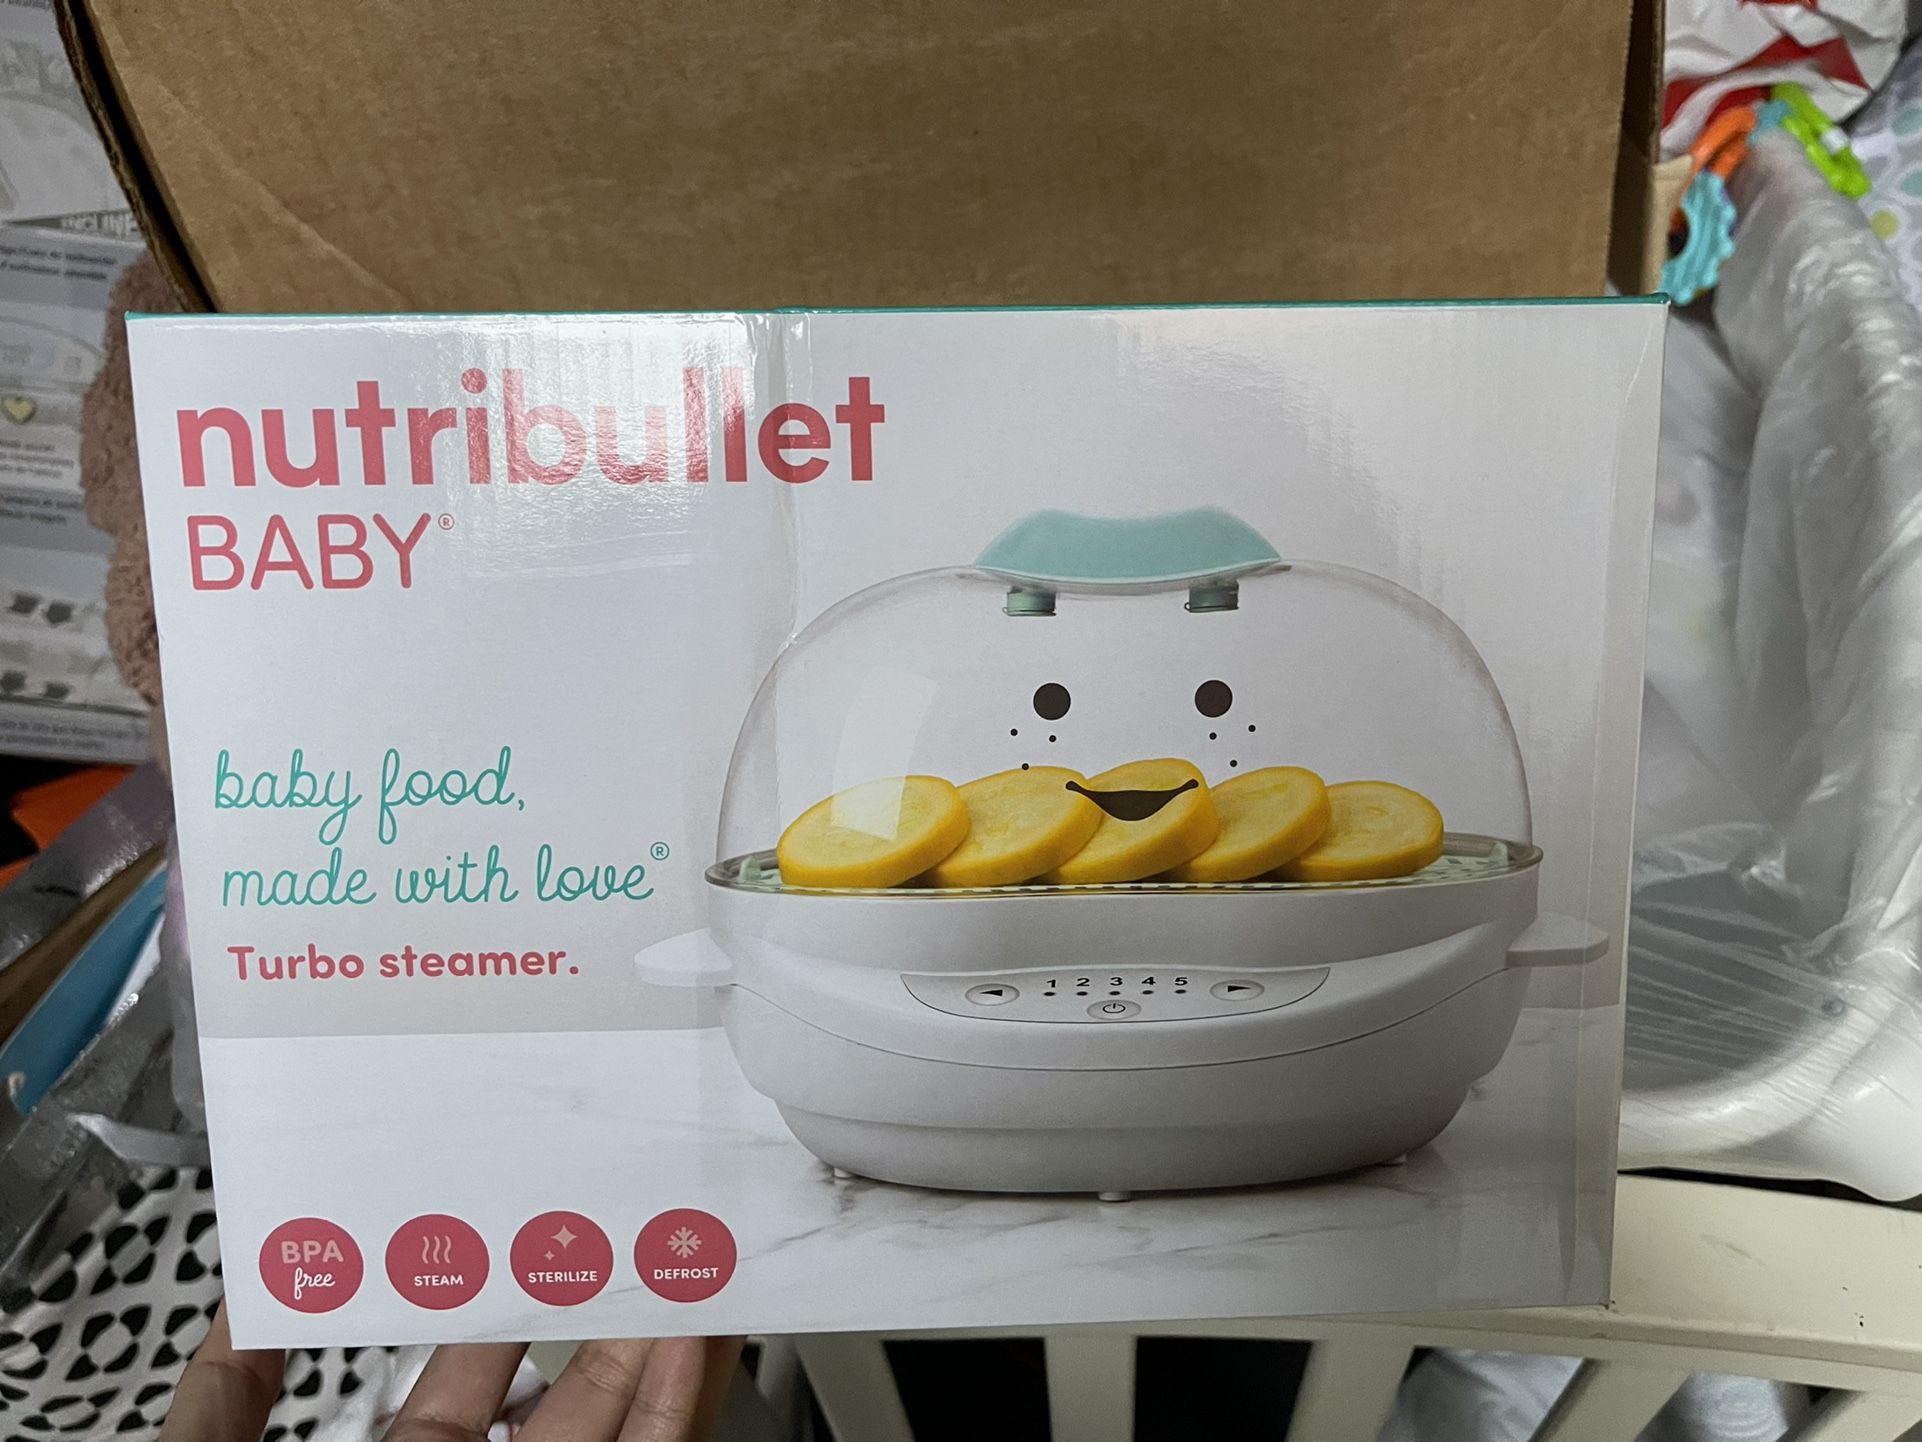 Nutribullet Baby Turbo Steamer